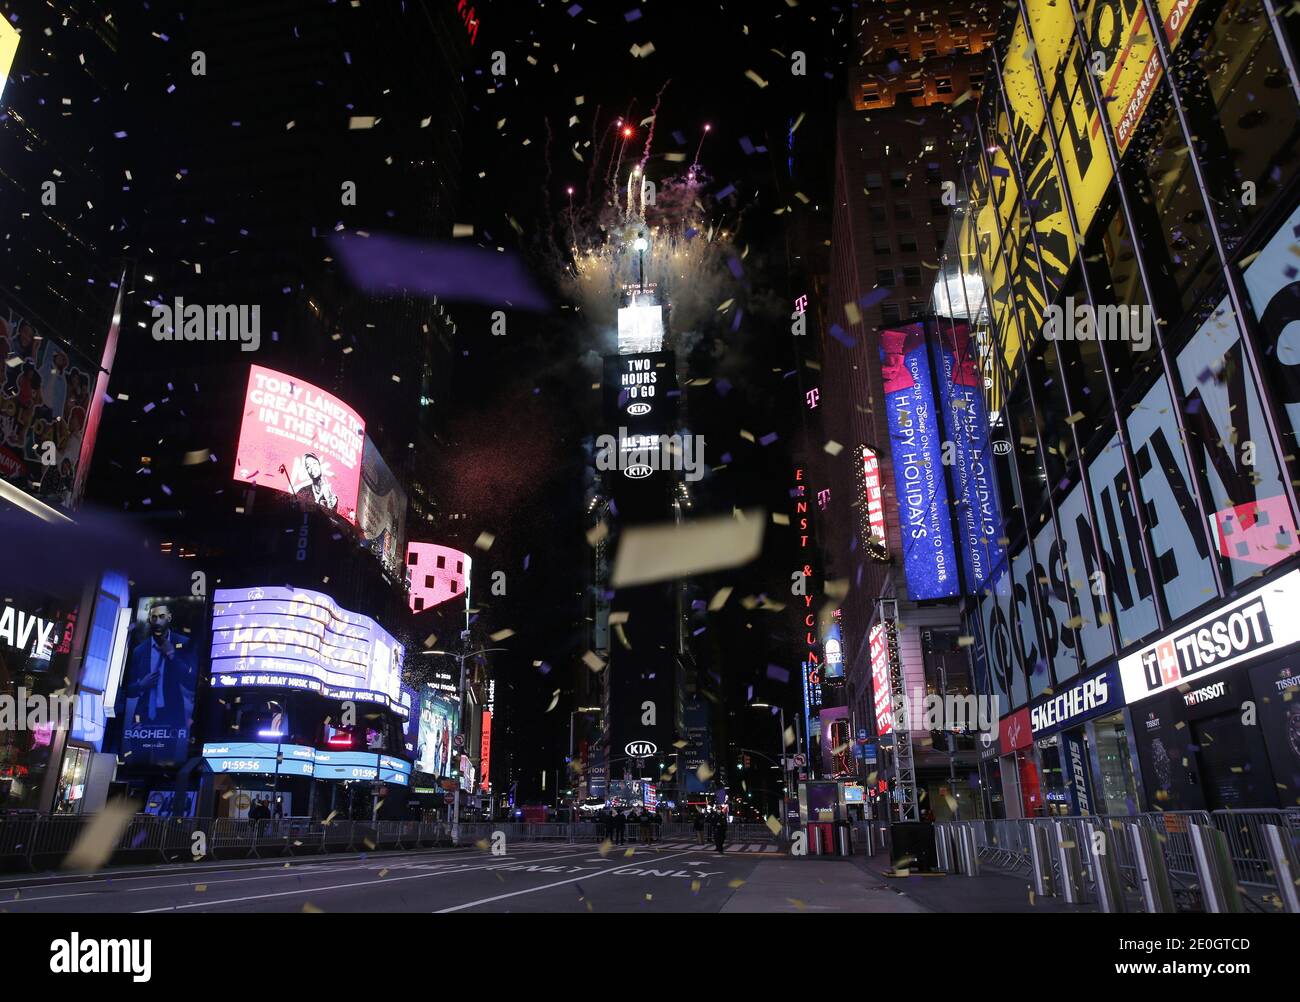 New York, Stati Uniti. 31 dicembre 2020. I confetti riempiono l'aria e i fuochi d'artificio esplodono su Times Square, che è vuota e chiusa al pubblico a causa della pandemia del coronavirus all'ora 10 della celebrazione di Capodanno a New York City giovedì 31 dicembre 2020. A causa della pandemia COVID-19 in corso, la vigilia di Capodanno 2021 a Times Square non sarà aperta al pubblico quest'anno. Foto di John Angelillo/UPI Credit: UPI/Alamy Live News Foto Stock